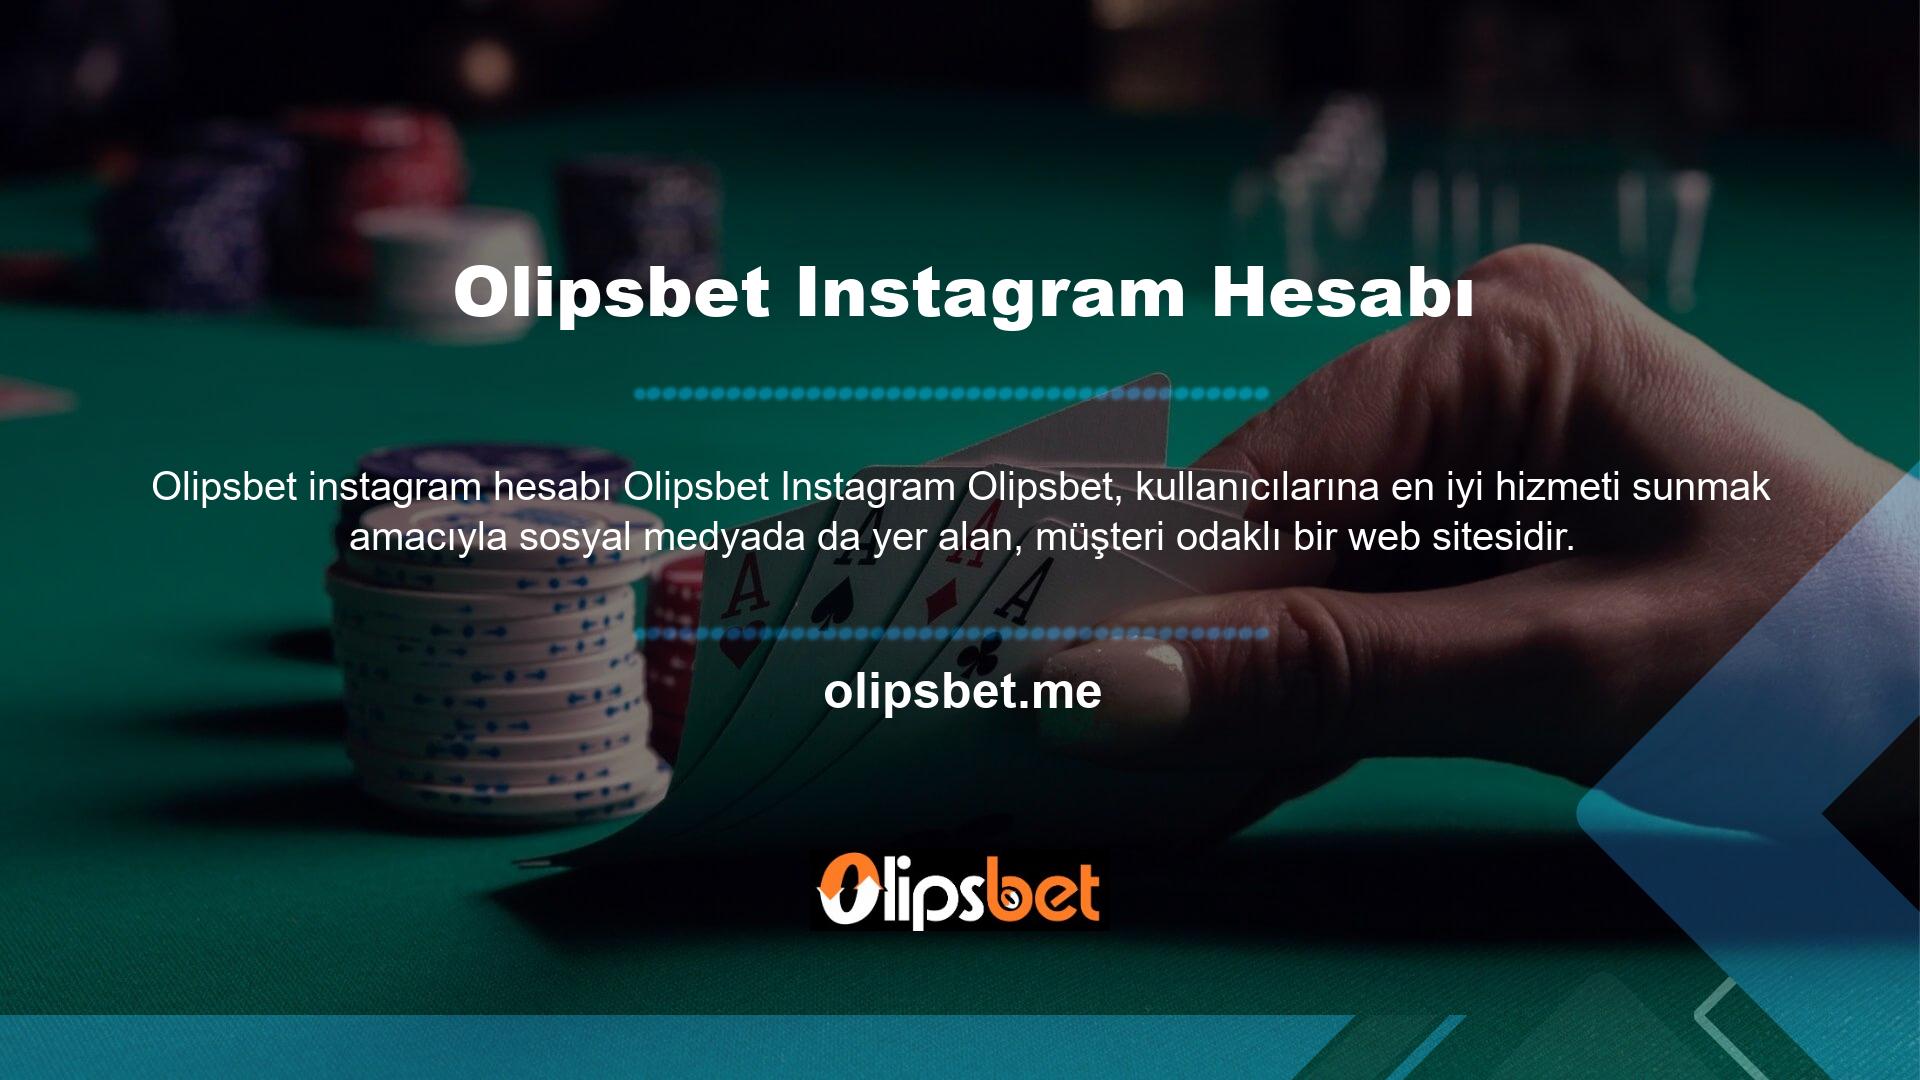 Oyun dünyasına büyük bir hedefle giren ve oyunculara hizmet vermeye başlayan site, kısa sürede kendine yer buldu ve hatta Olipsbet Twitter hesabını bile oluşturdu